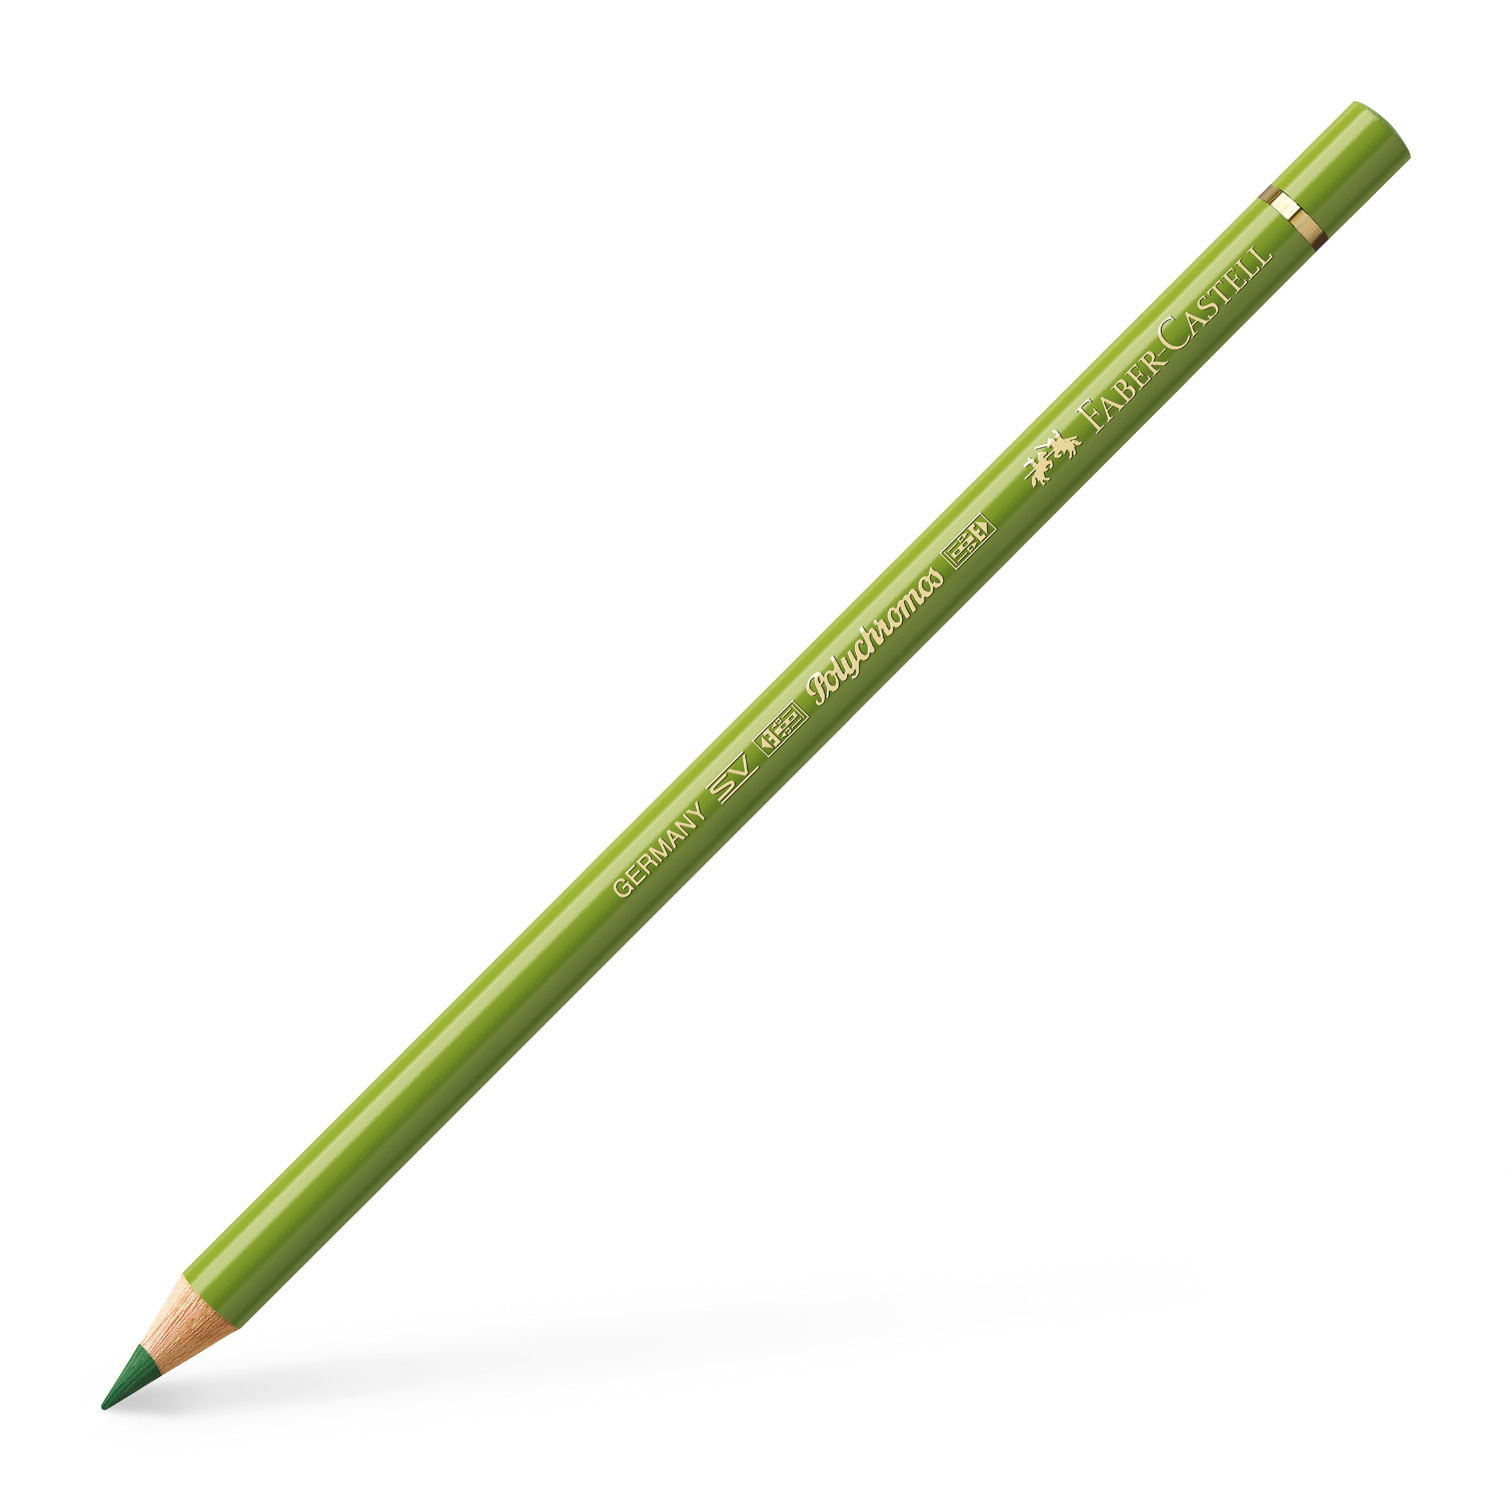 Faber-Castell Polychromos színes ceruza sárgás föld zöld